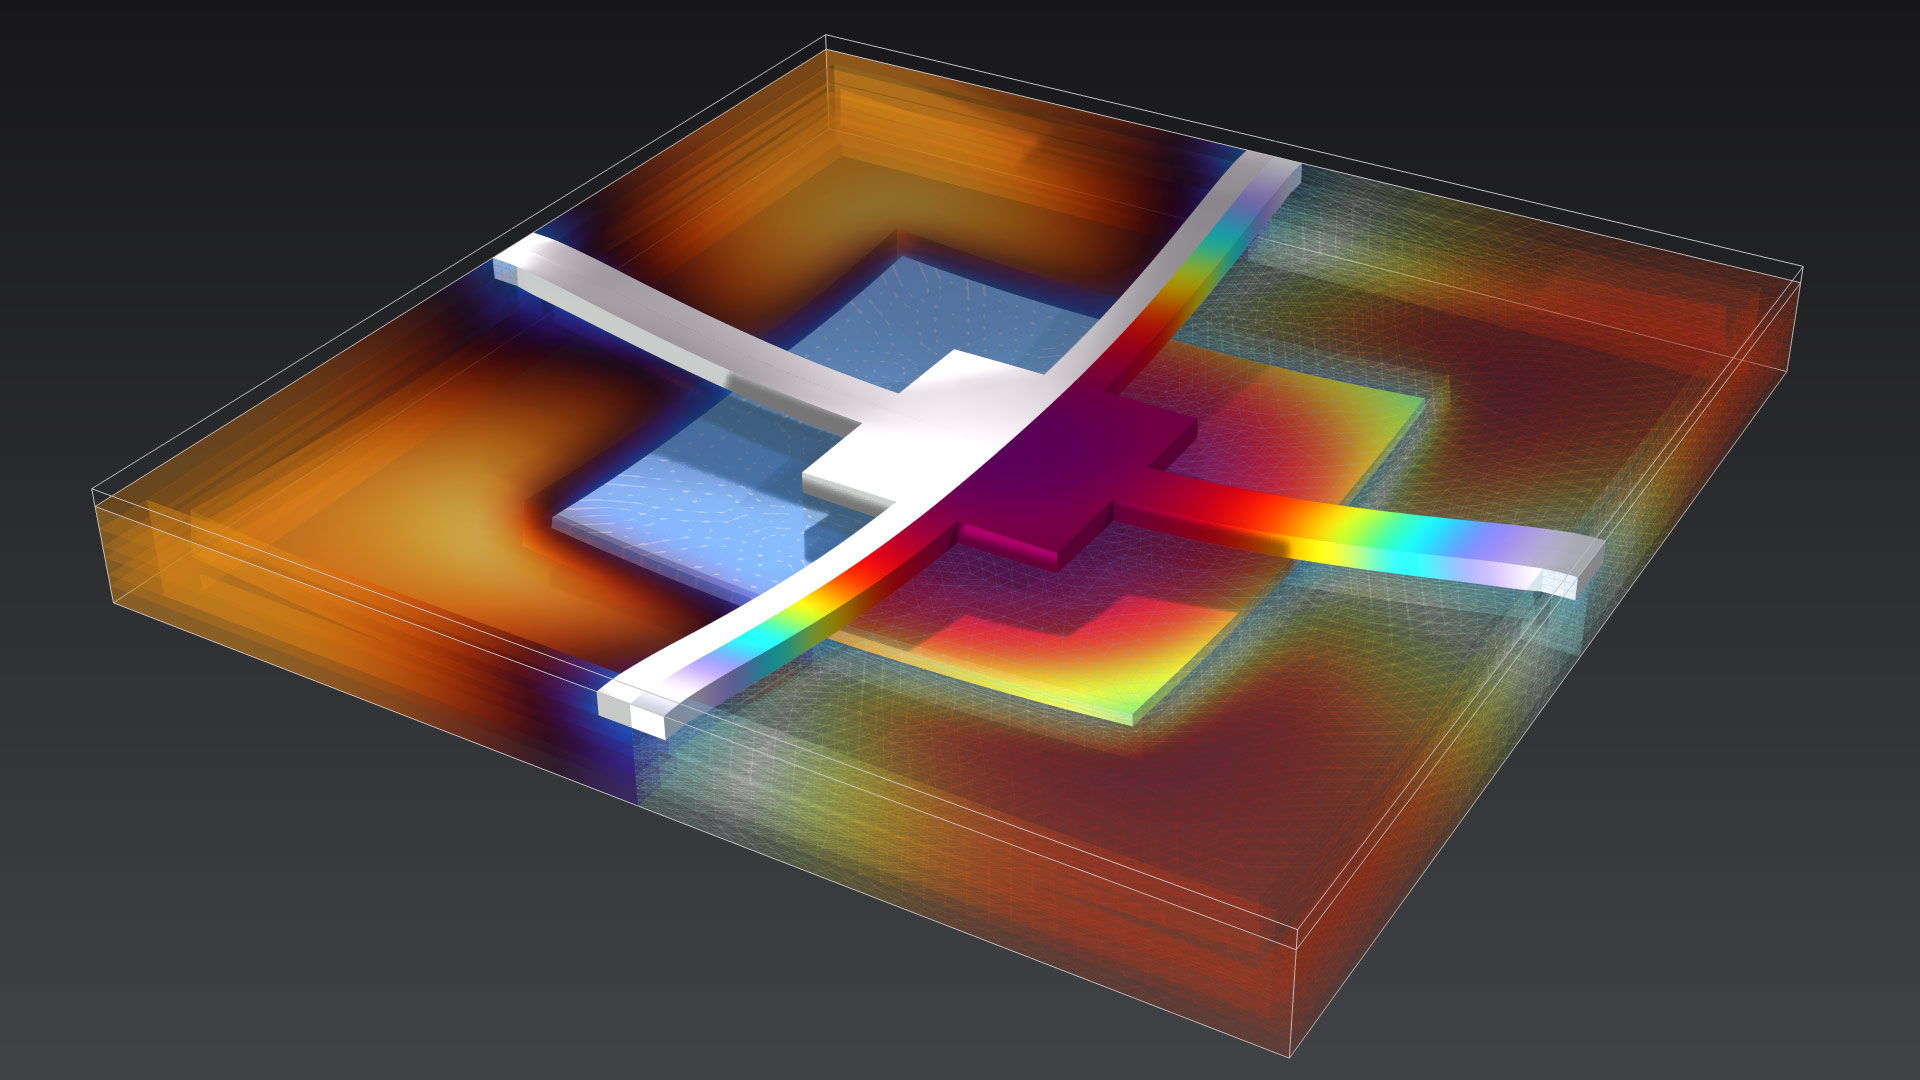 以 Thermal Wave 和 Prism 颜色表显示的换能器模型。